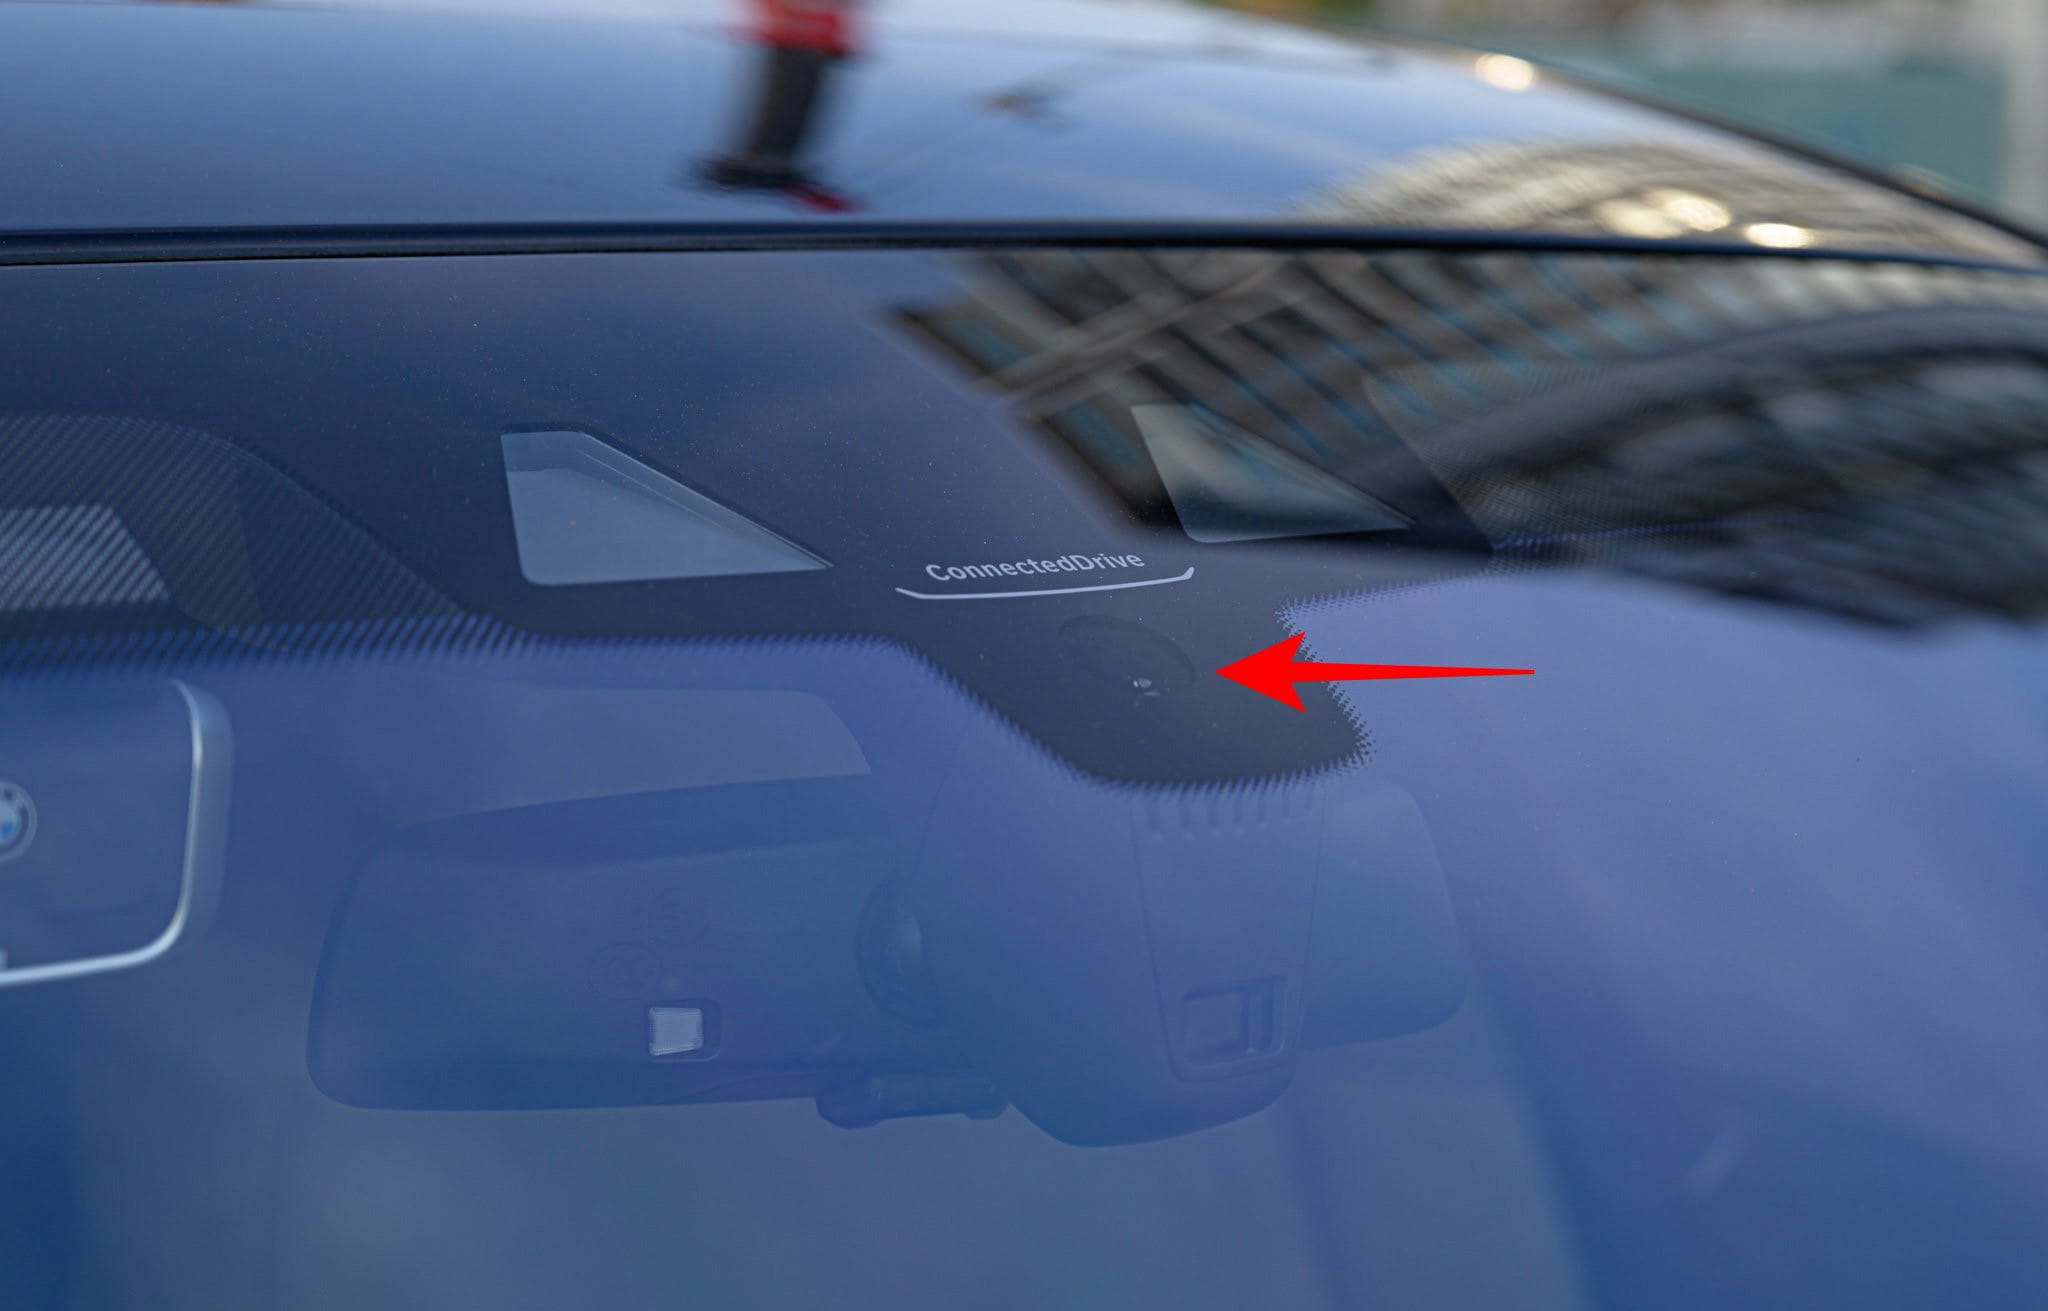 Cụm cảm biến sẽ được đặt ở sau kính chắn gió, và ở vị trí chính giữa cùng với chỗ đặt các hệ thống khác của xe.